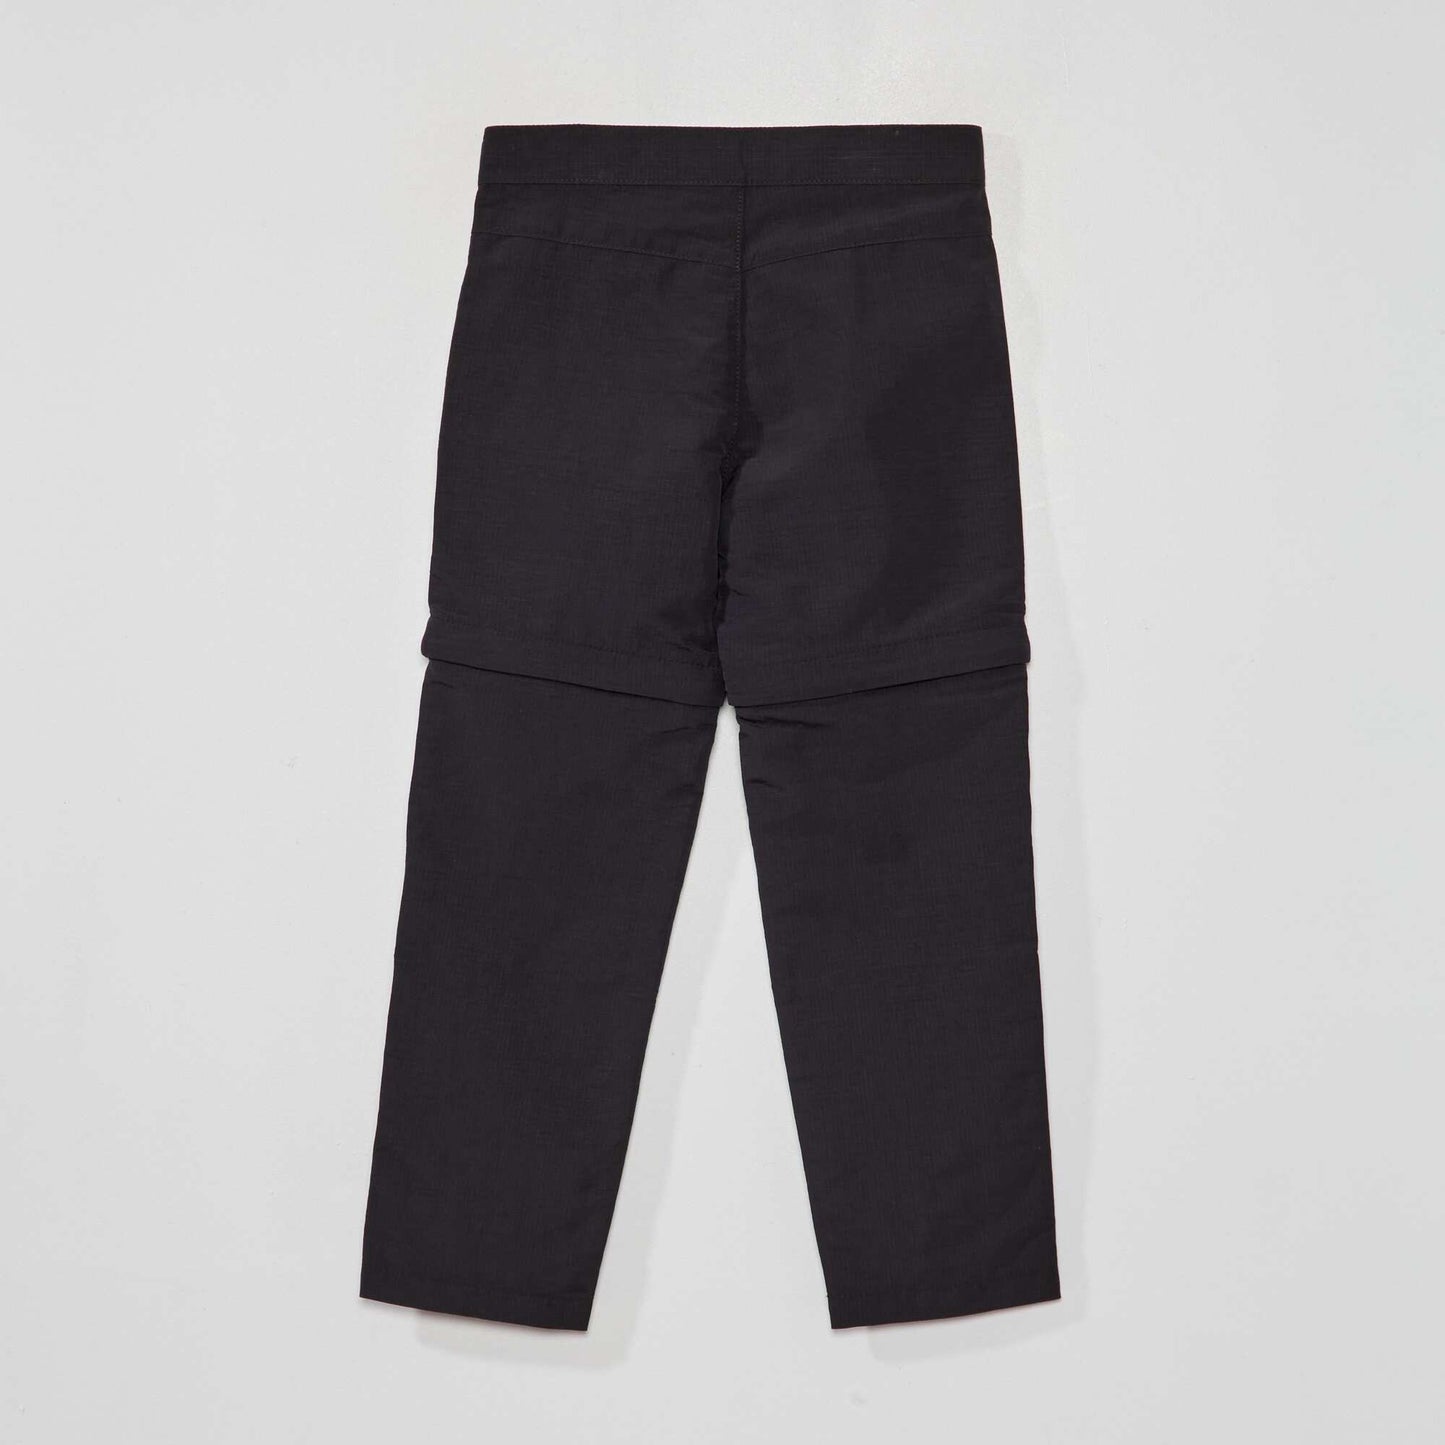 Pantalon/short 2 en 1 NEGRO DE VERDAD